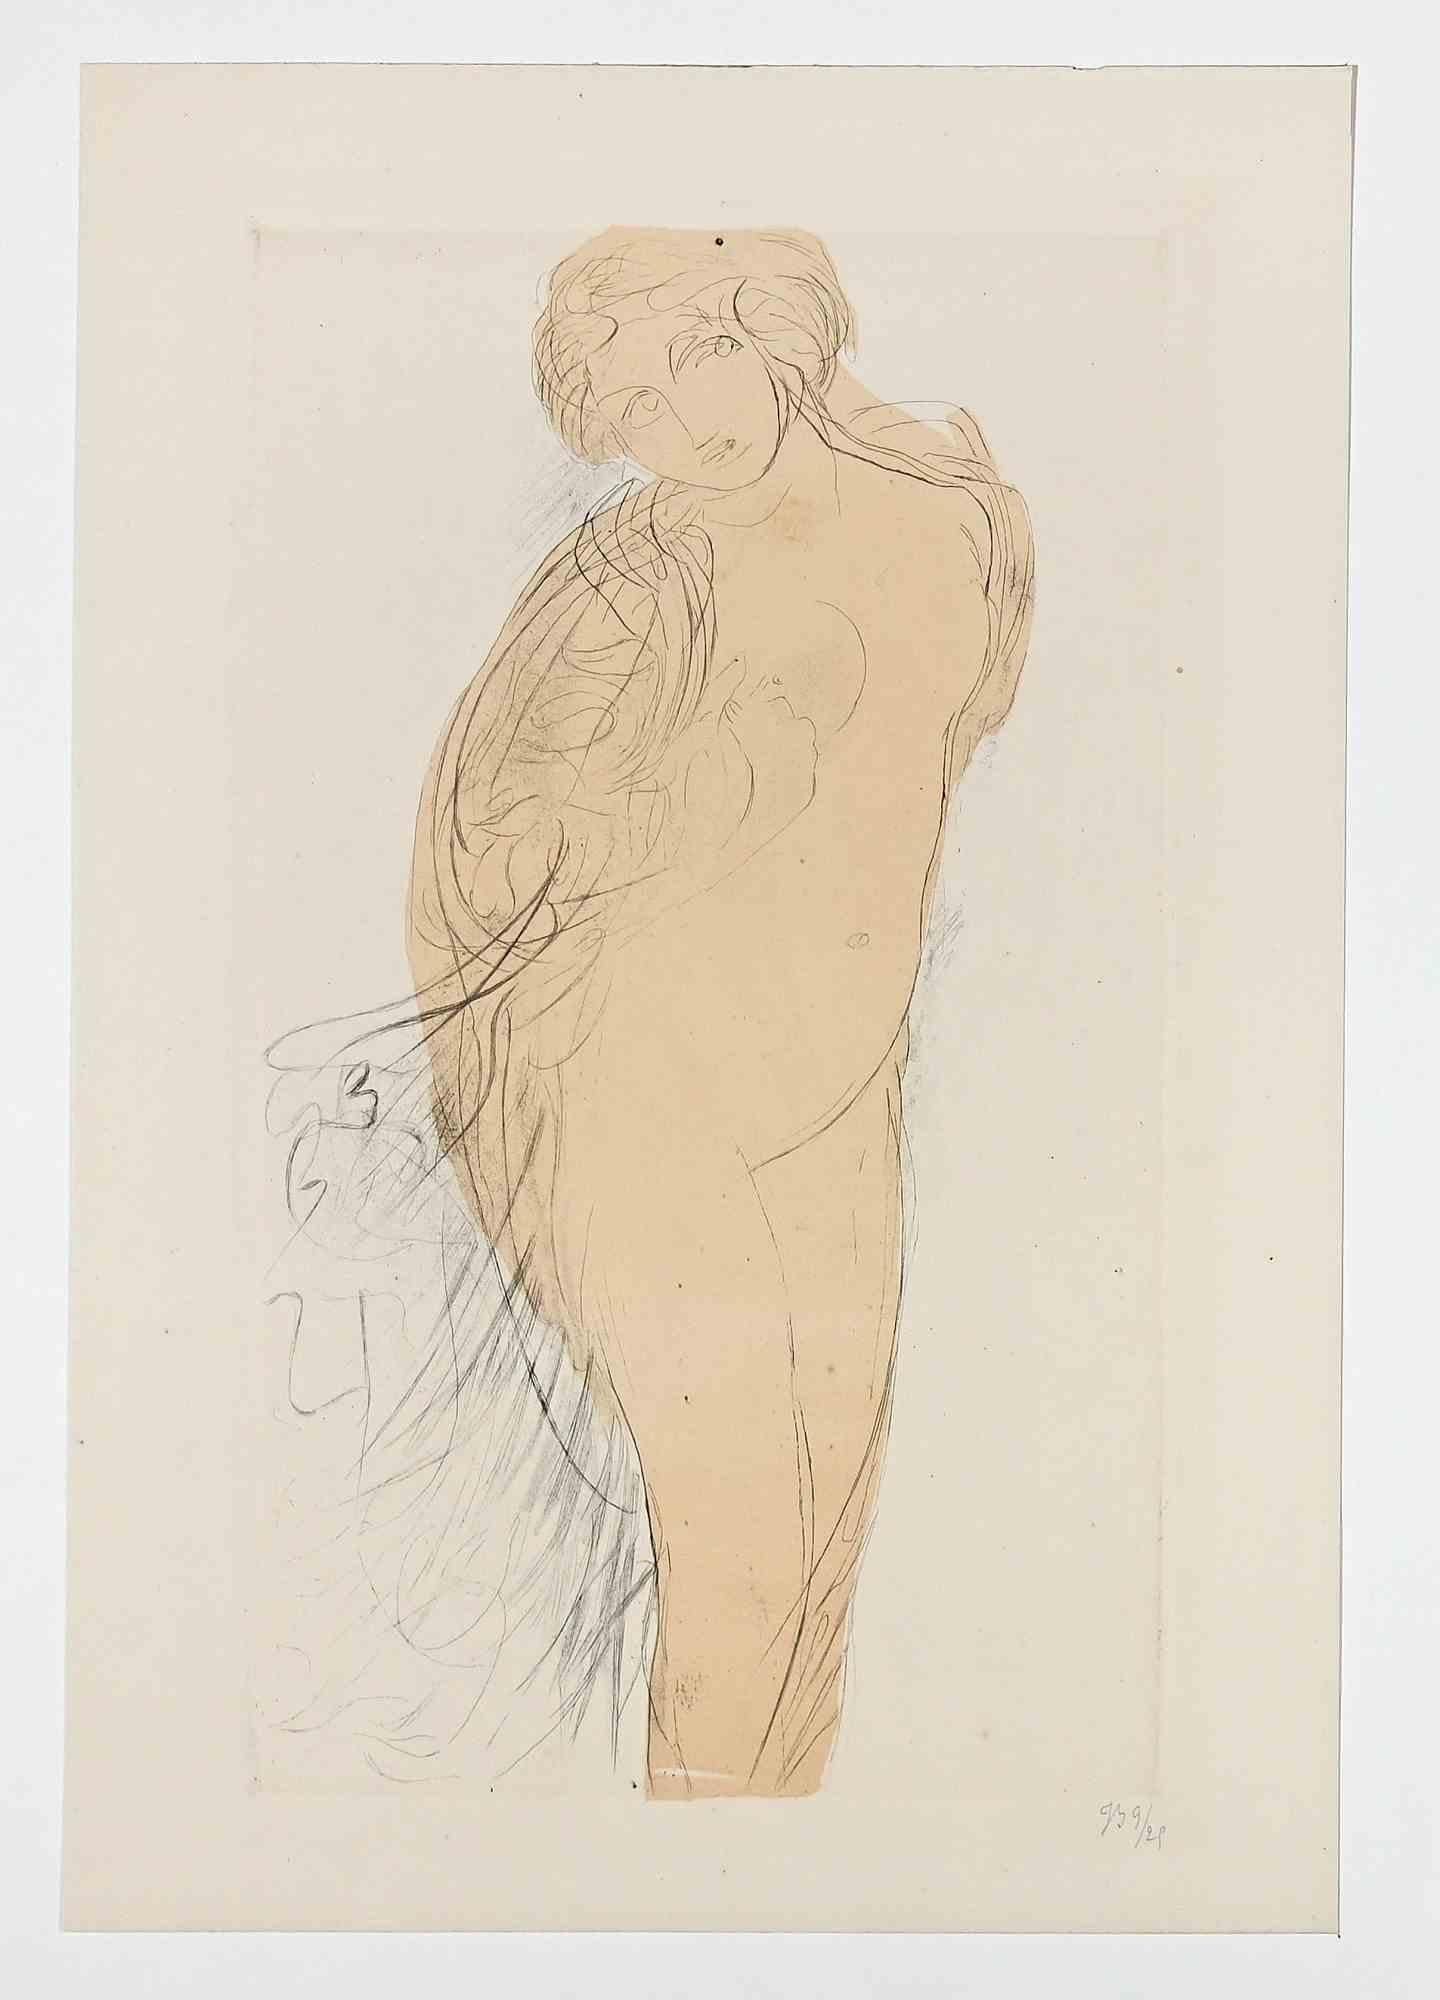 Woman ist eine Original-Radierung der französischen Künstlerin, die Anfang des 20. Jahrhunderts nach Auguste Rodin angefertigt wurde  Jeanne Bardey (1872 - 1954)

Nummerierte Ausgabe, 9/25.

Gute Bedingungen.

Die französische Malerin und